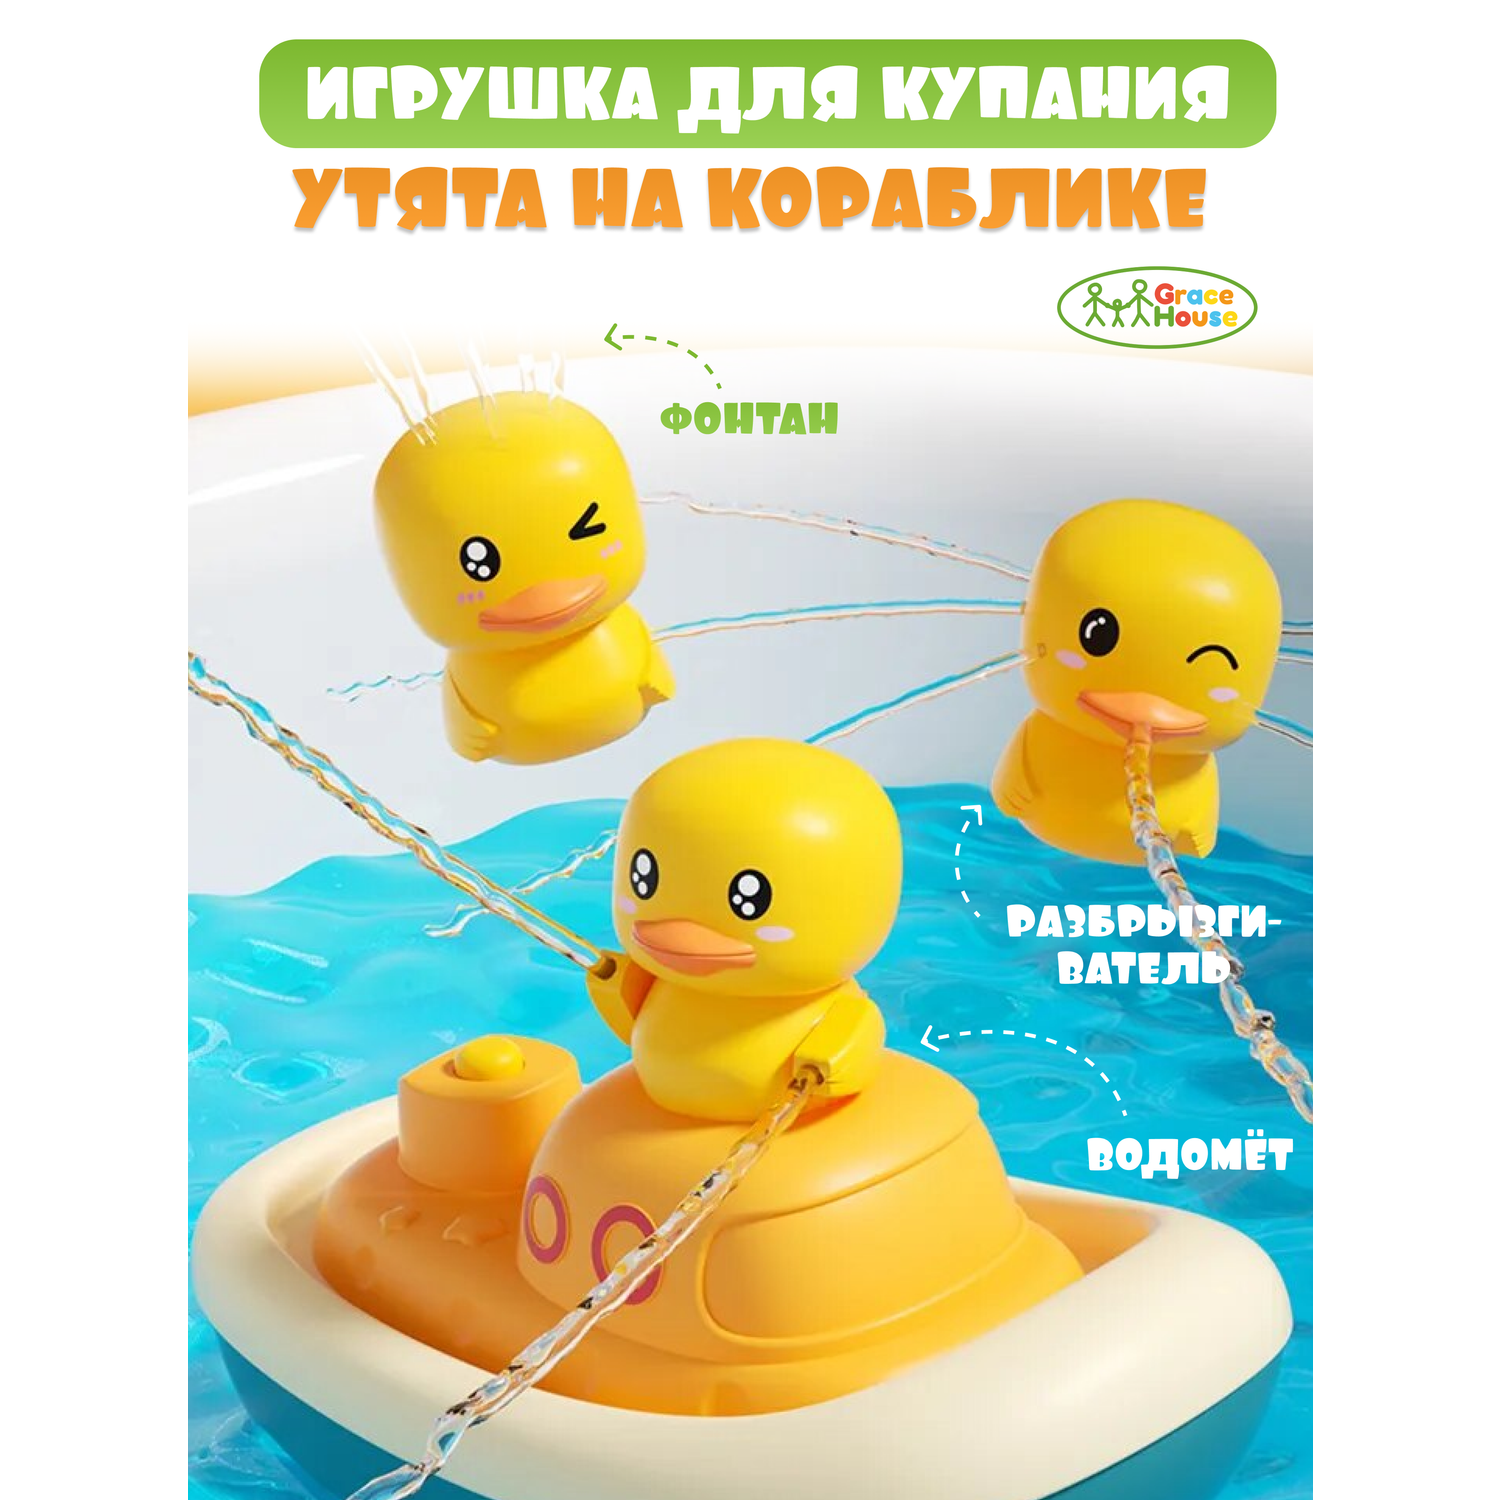 Игровой набор GRACE HOUSE детская игрушка для ванной утки фонтан на кораблике - фото 1